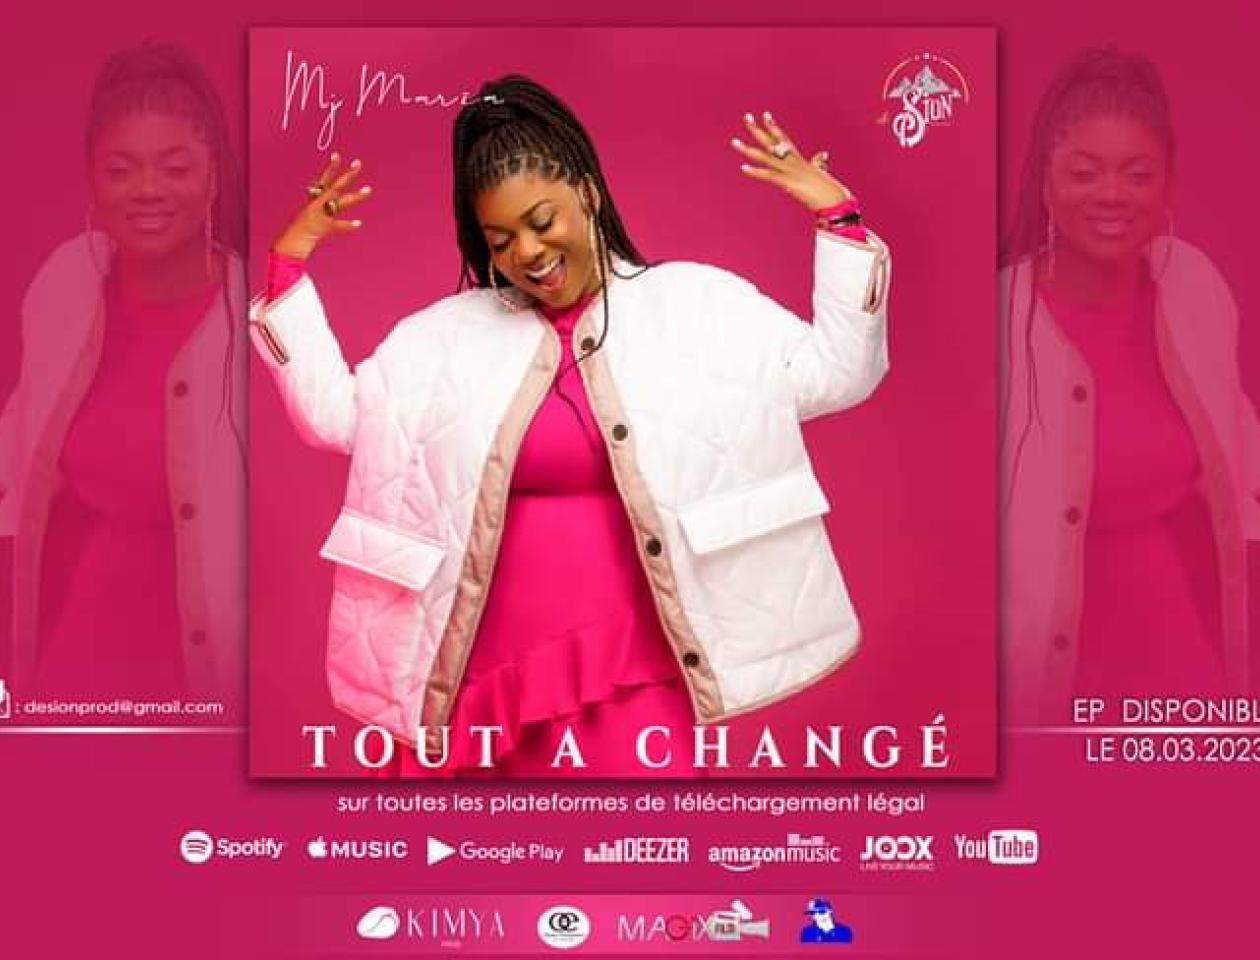 Affiche du EP « Tout a changé » de MJ Maria. 